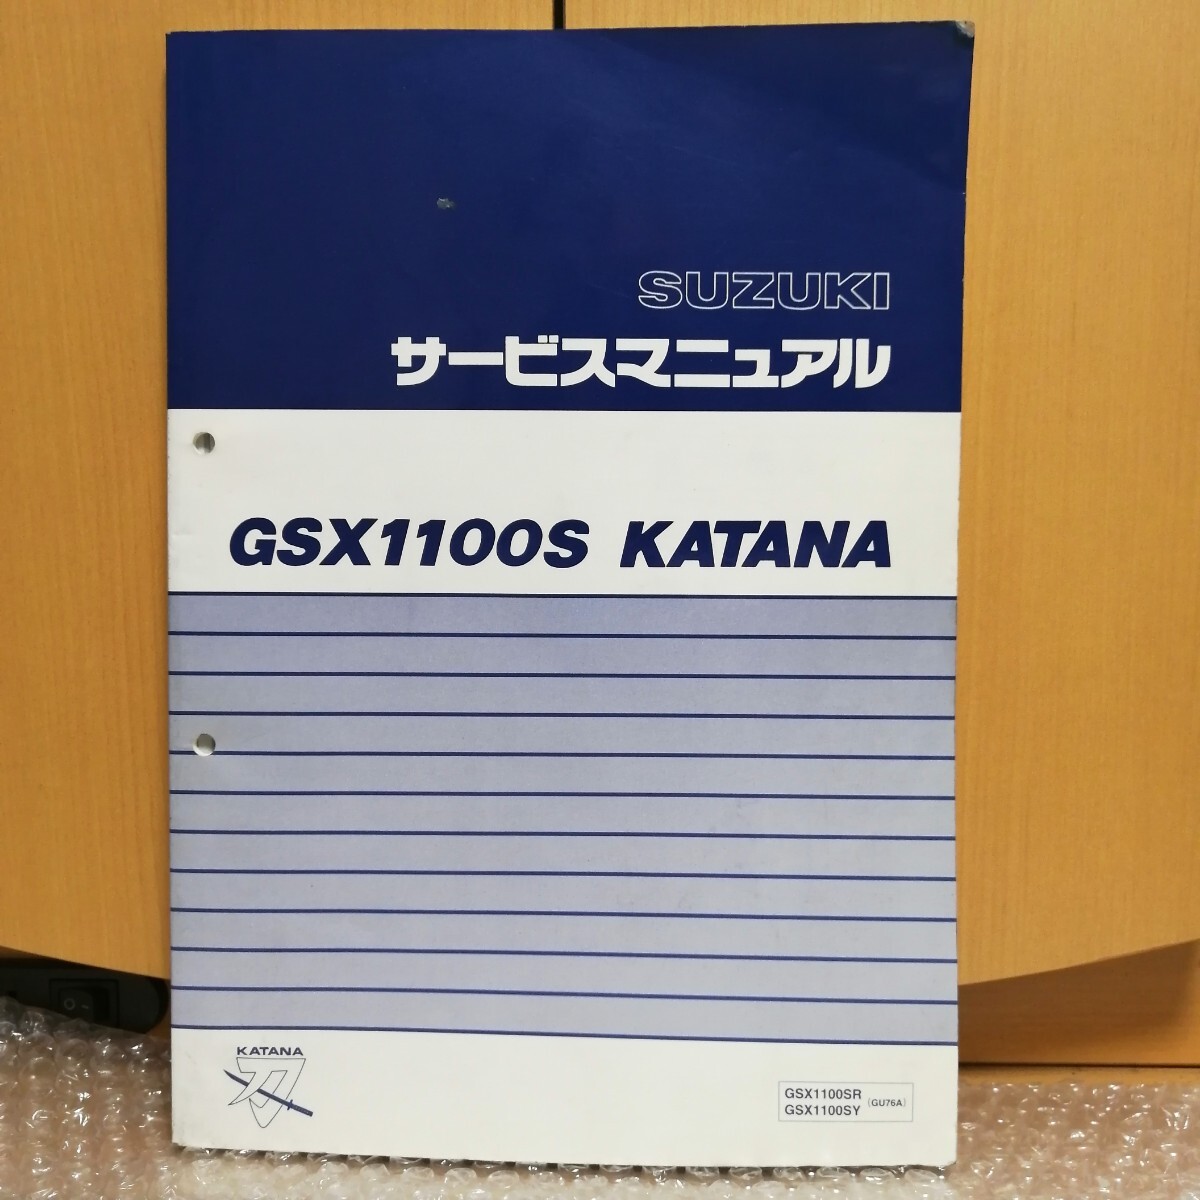 スズキ GSX1100S KATANA GSX1100SR/GSX1100SY(GU76A) サービスマニュアル カタナ メンテナンス レストア整備書修理書10300の画像1